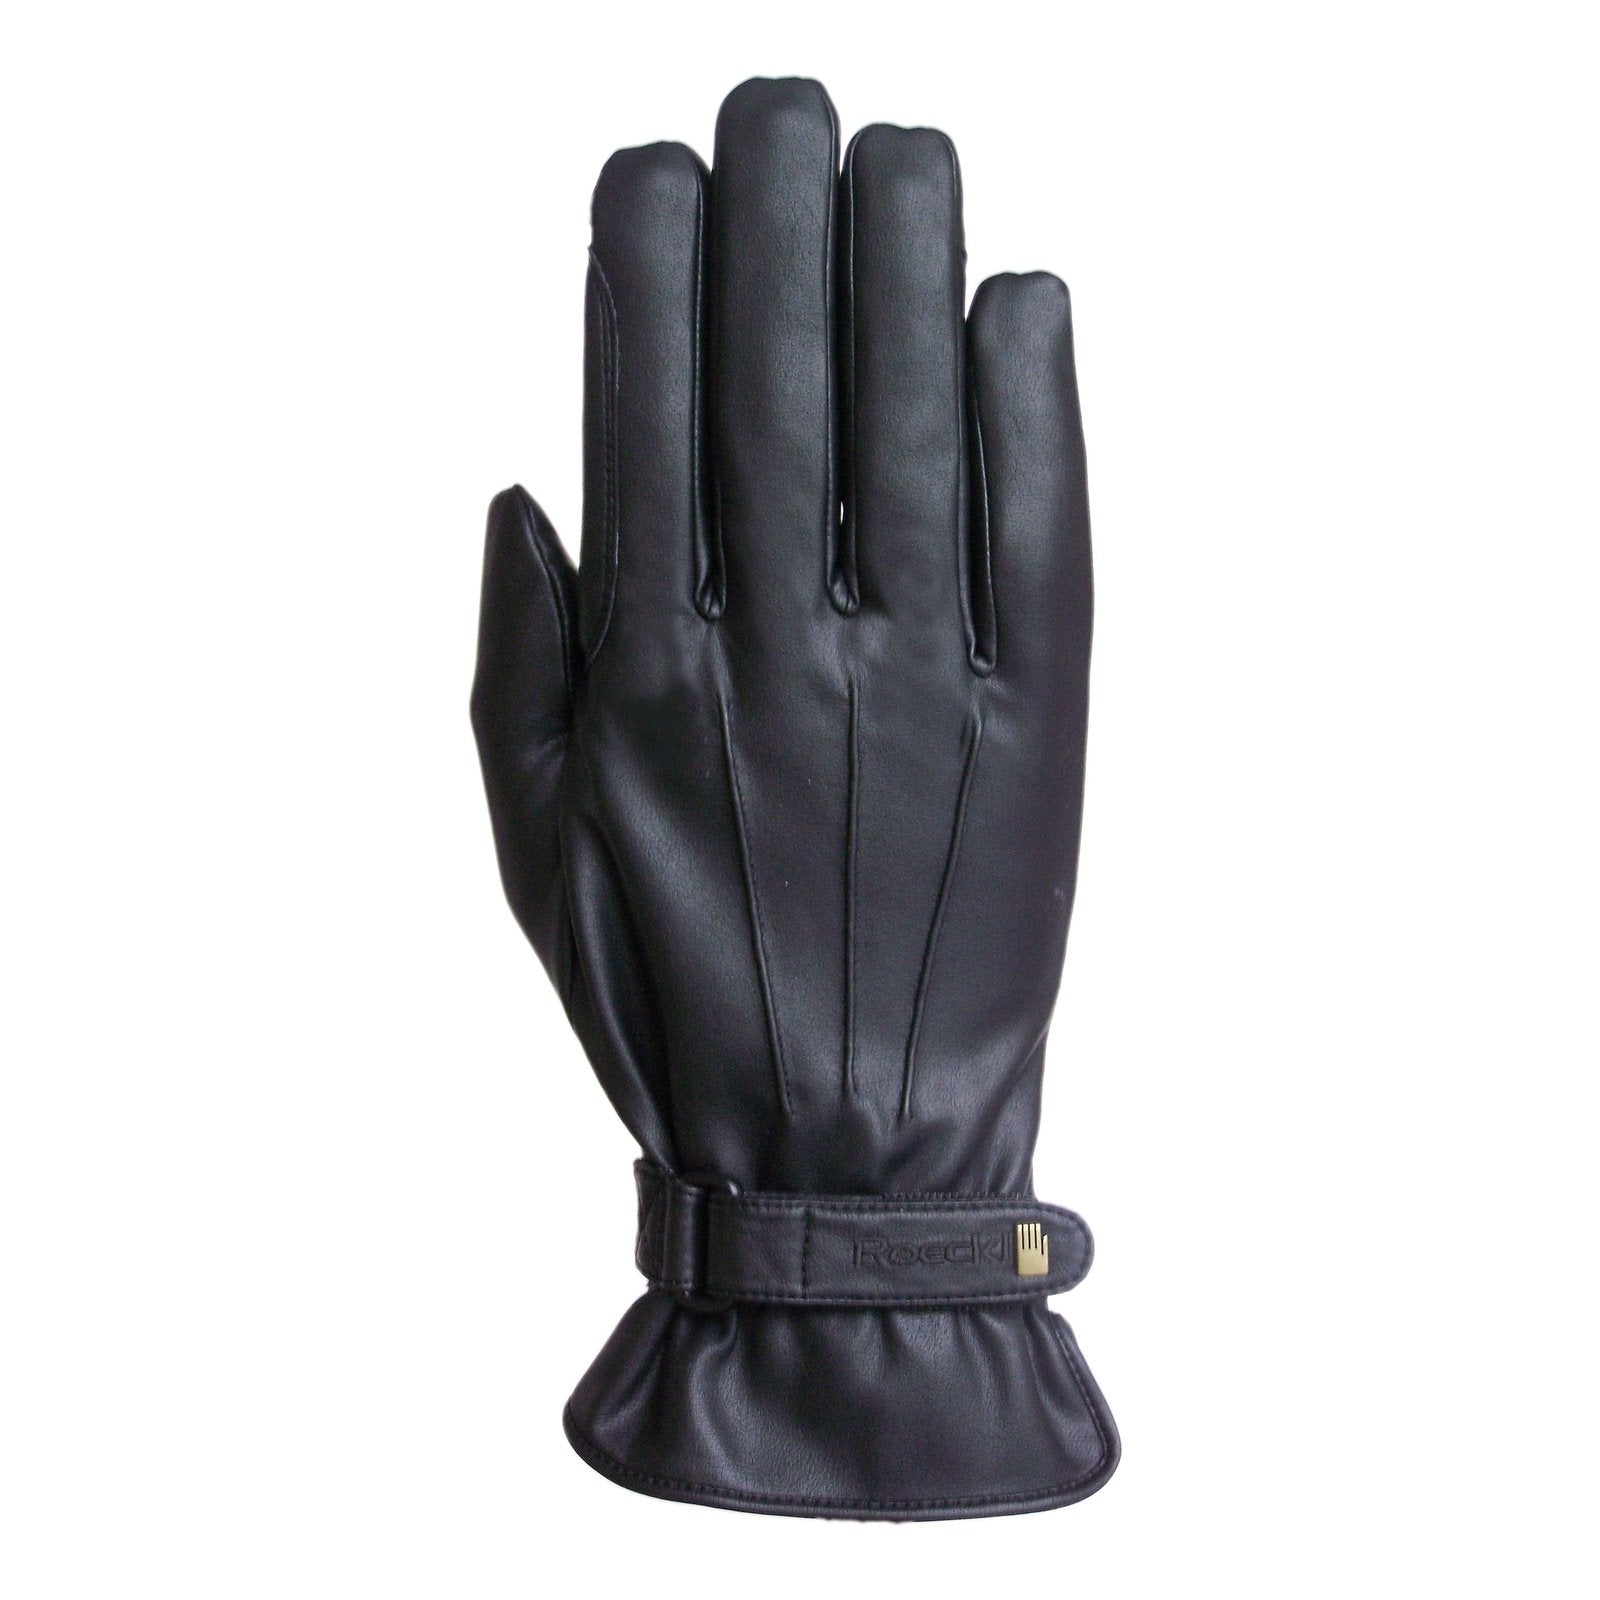 Roeckl Handschuhe Weymouth bei SP-Reitsport